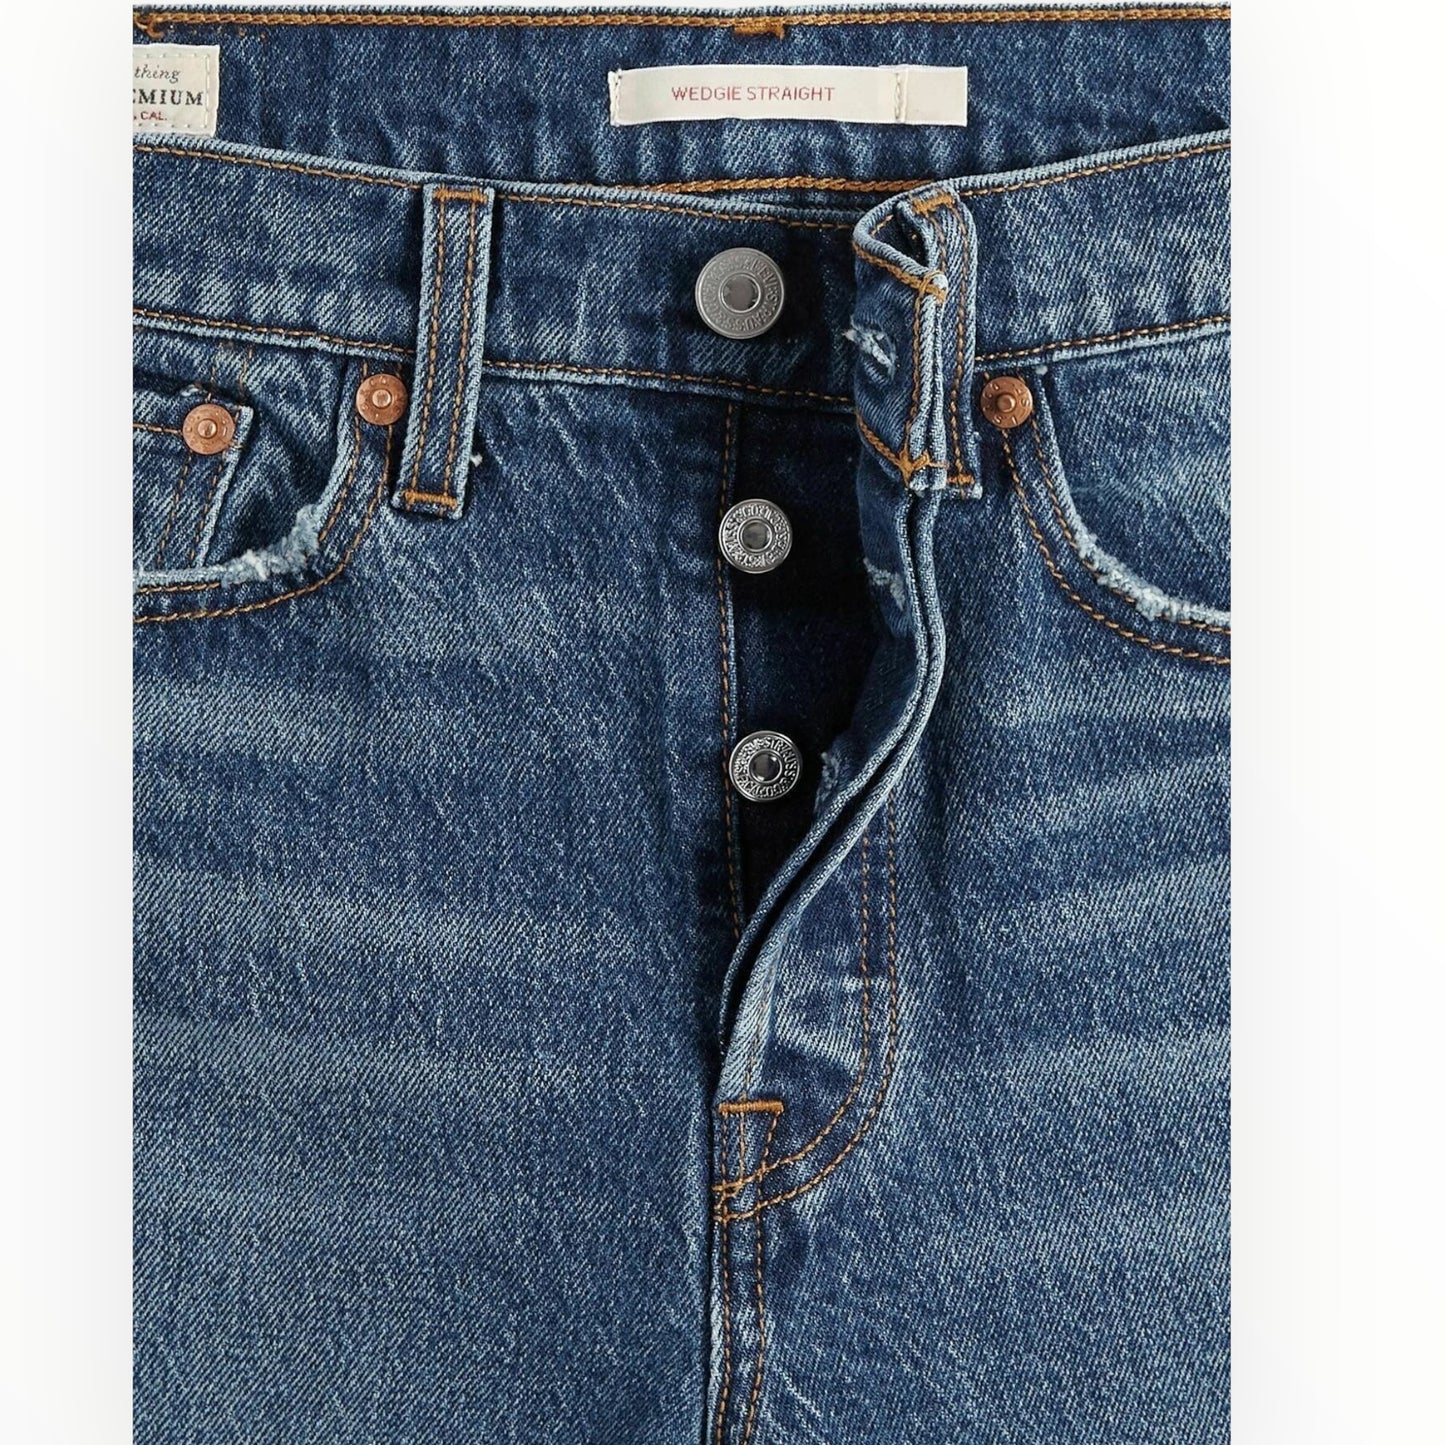 LÉVIS | Wedgie jeans